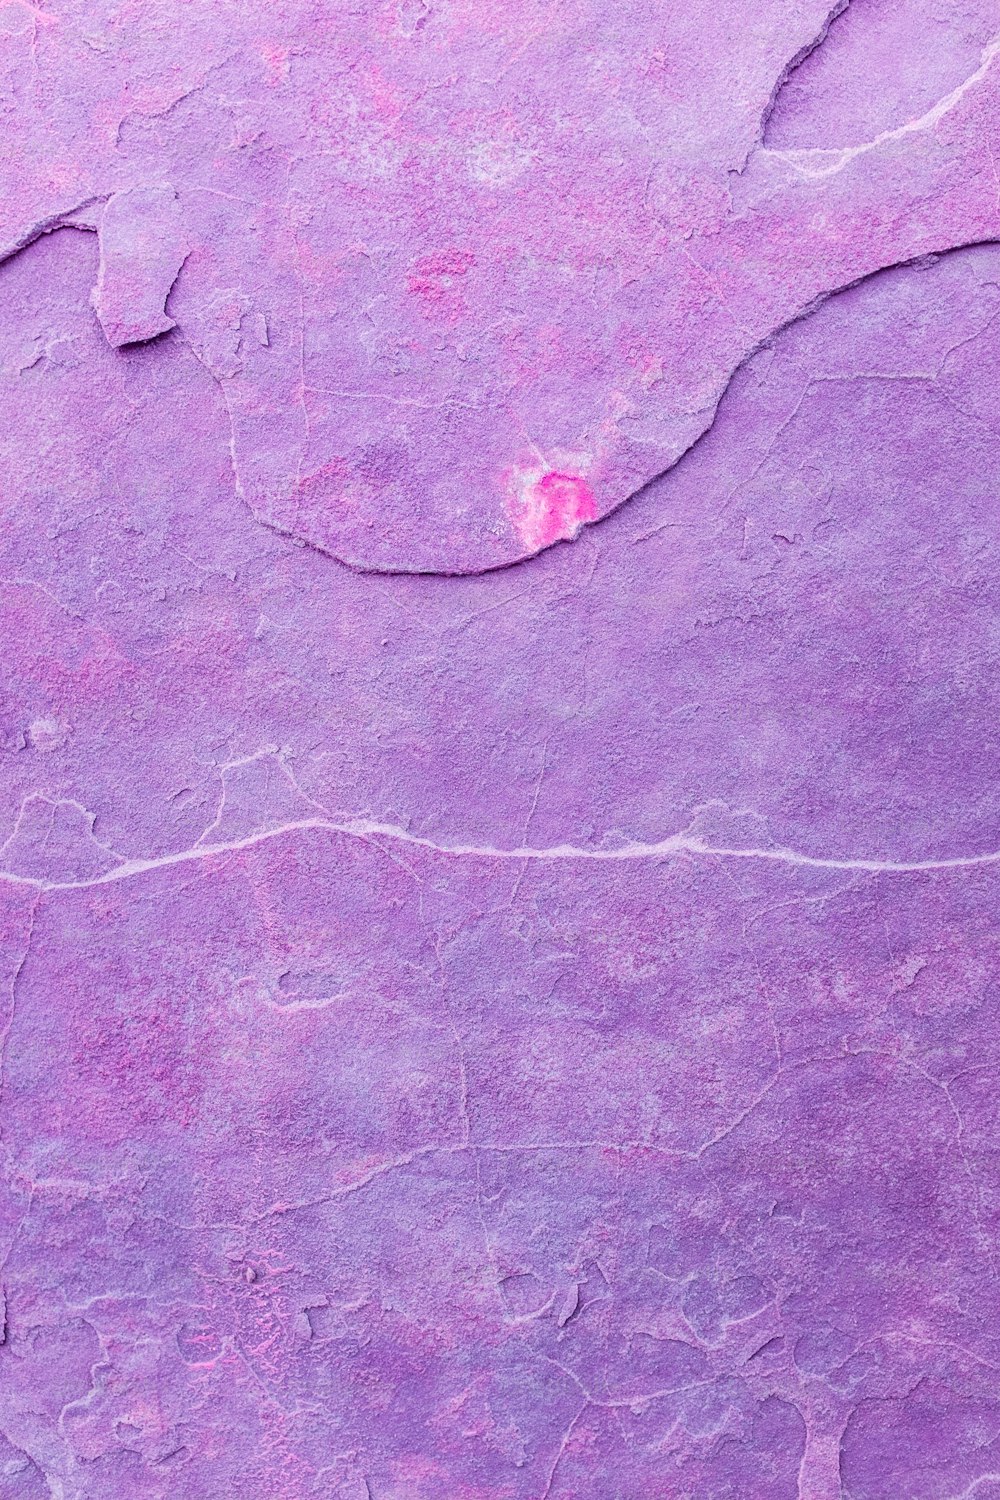 eine Nahaufnahme einer violetten Oberfläche mit einem kleinen Loch in der Mitte